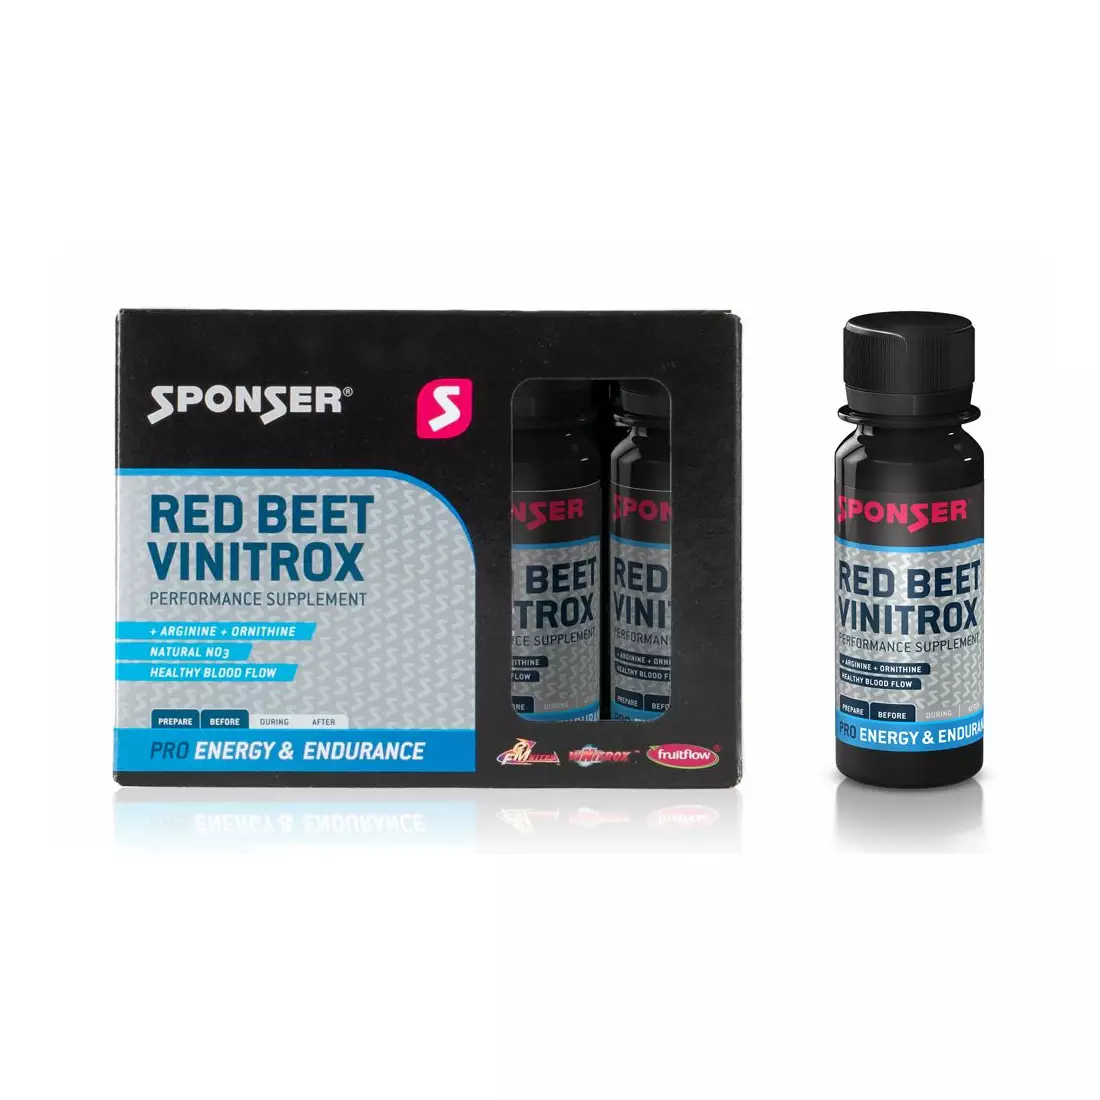 Doplněk pro udržení správné agregace krevních destiček SPONSER RED BEET VINITROX (krabička 4 x 60 ml lahvičky)